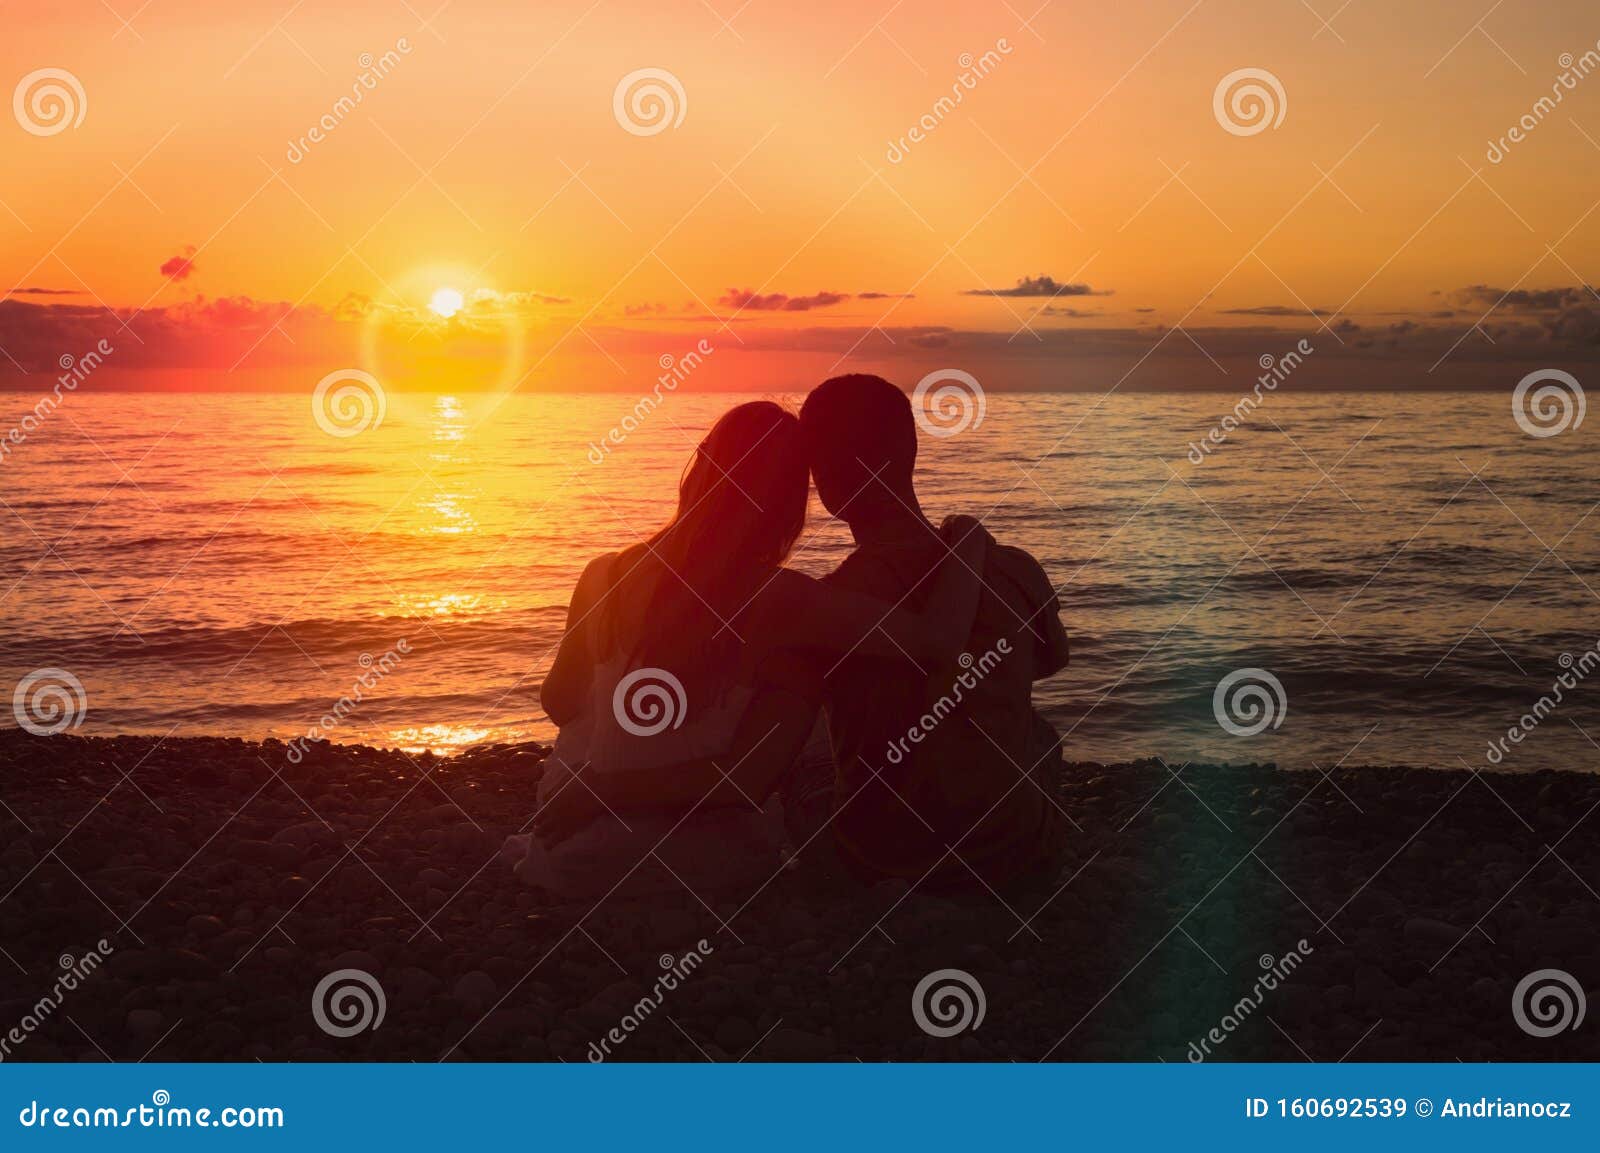 Фото Влюбленной Пары На Море